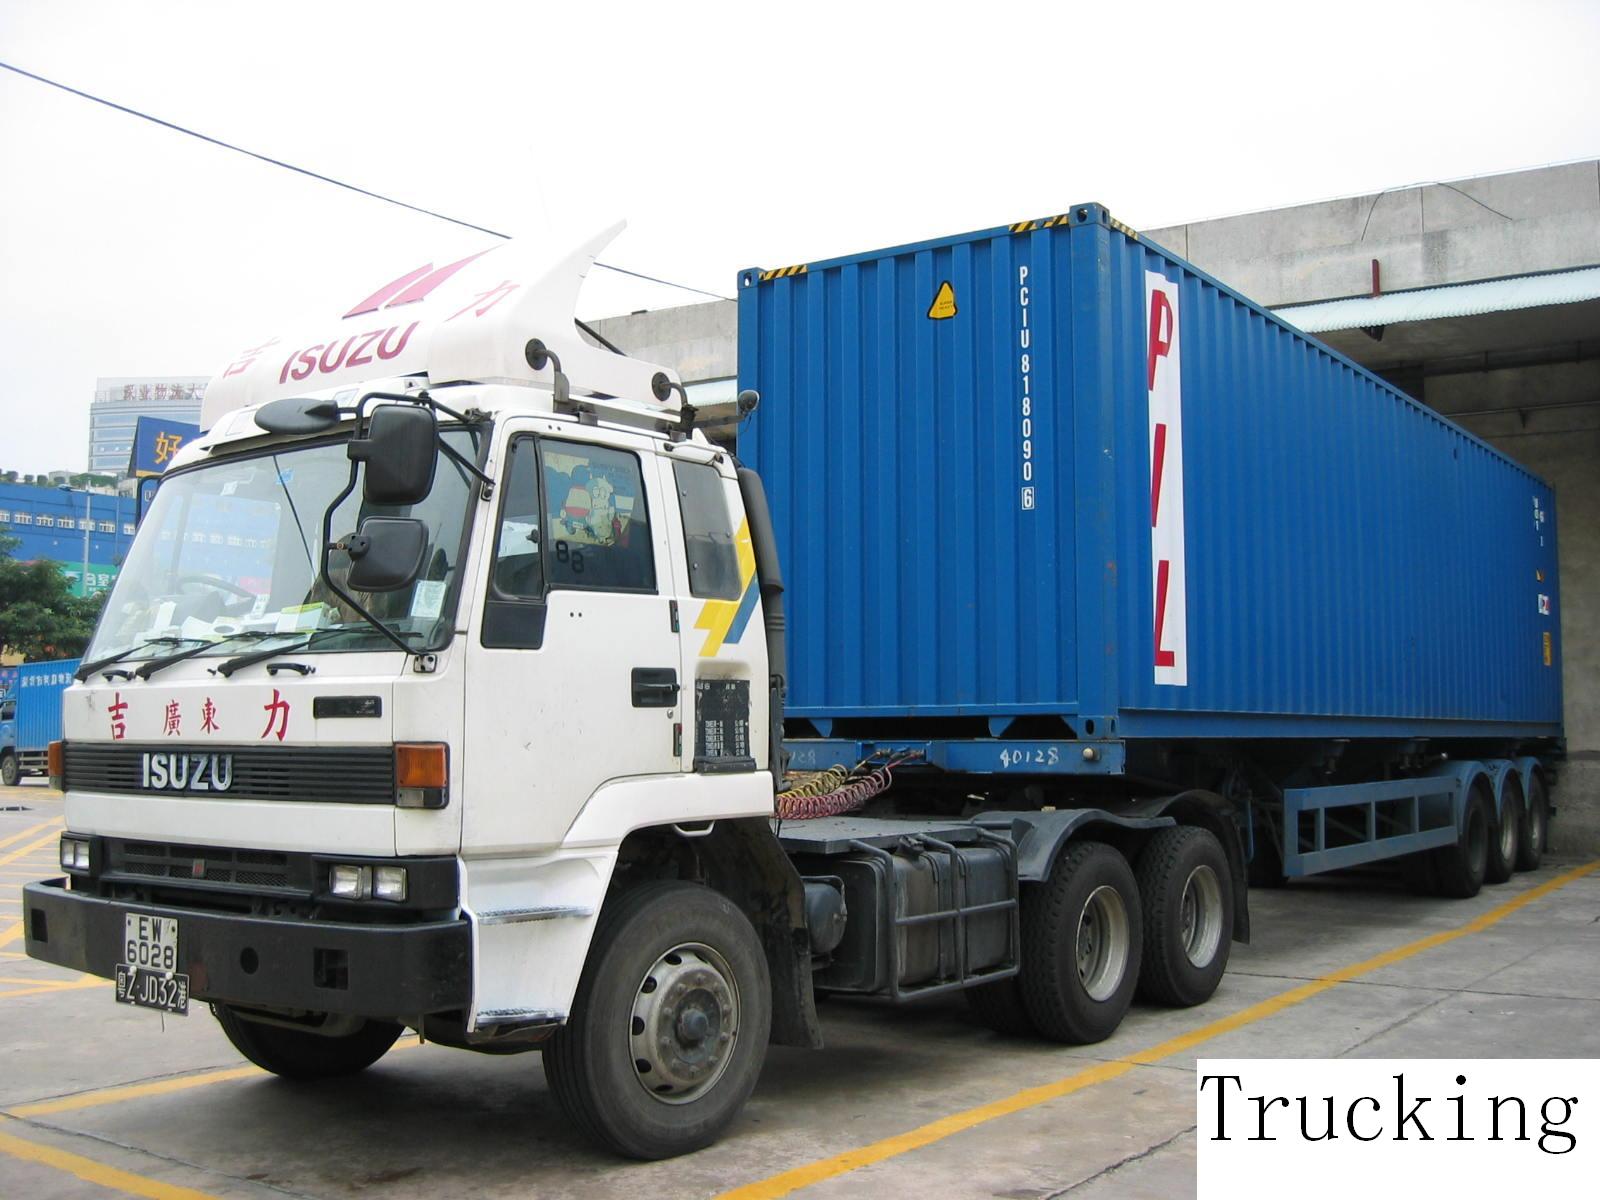 Truck and warehouse in Guangzhou/Shenzhen